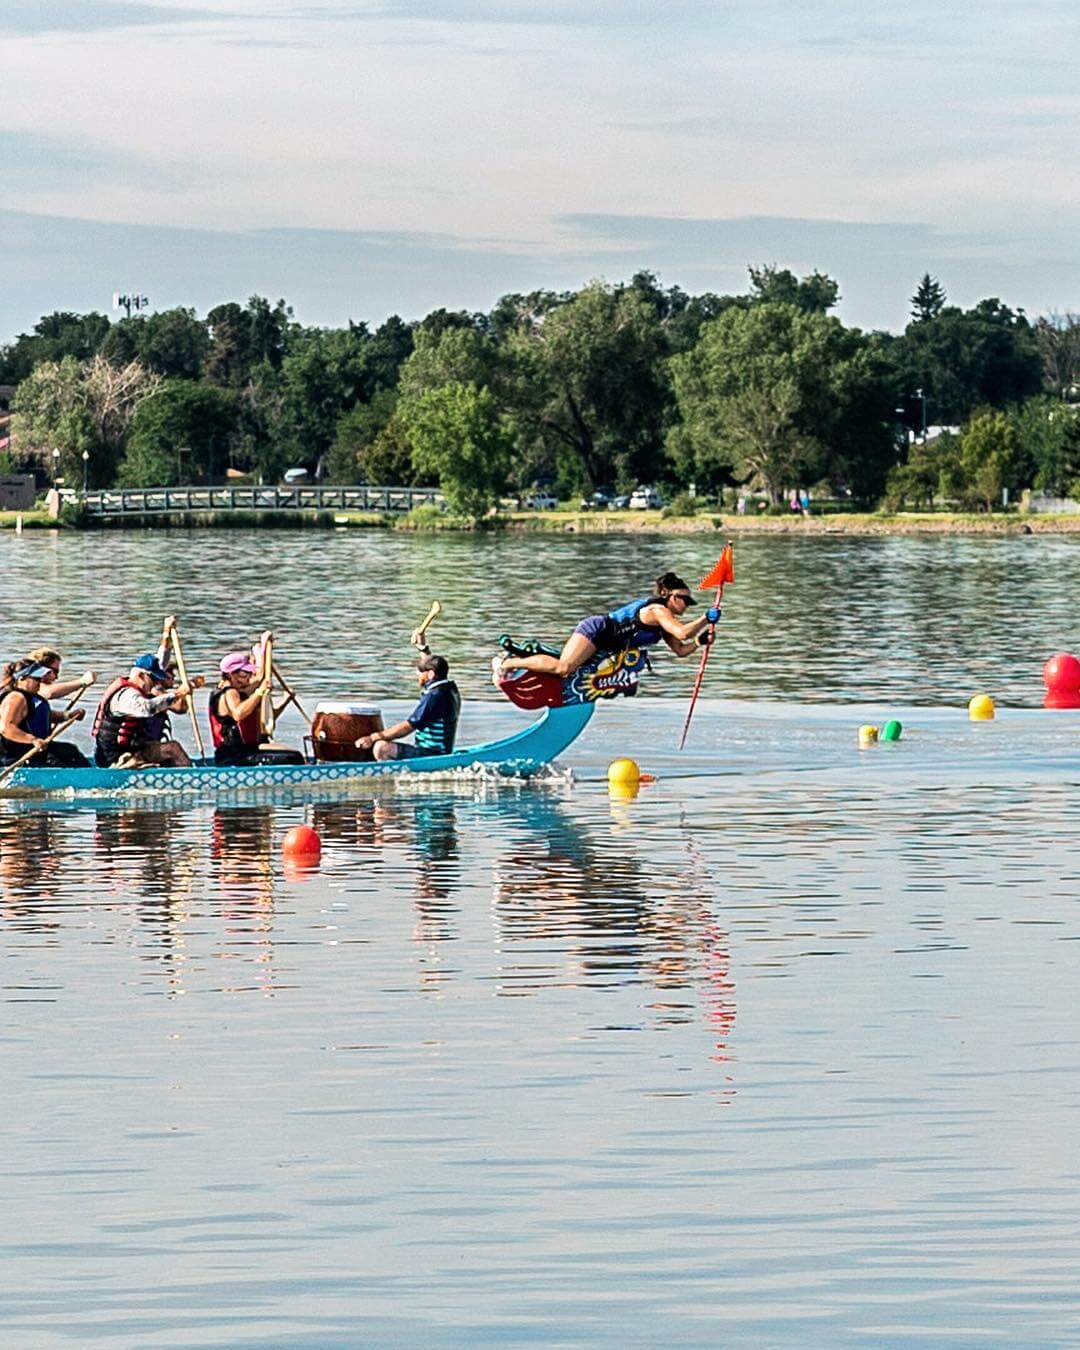 Boat in Sloan's Lake for Denver's Dragon Boat Festival